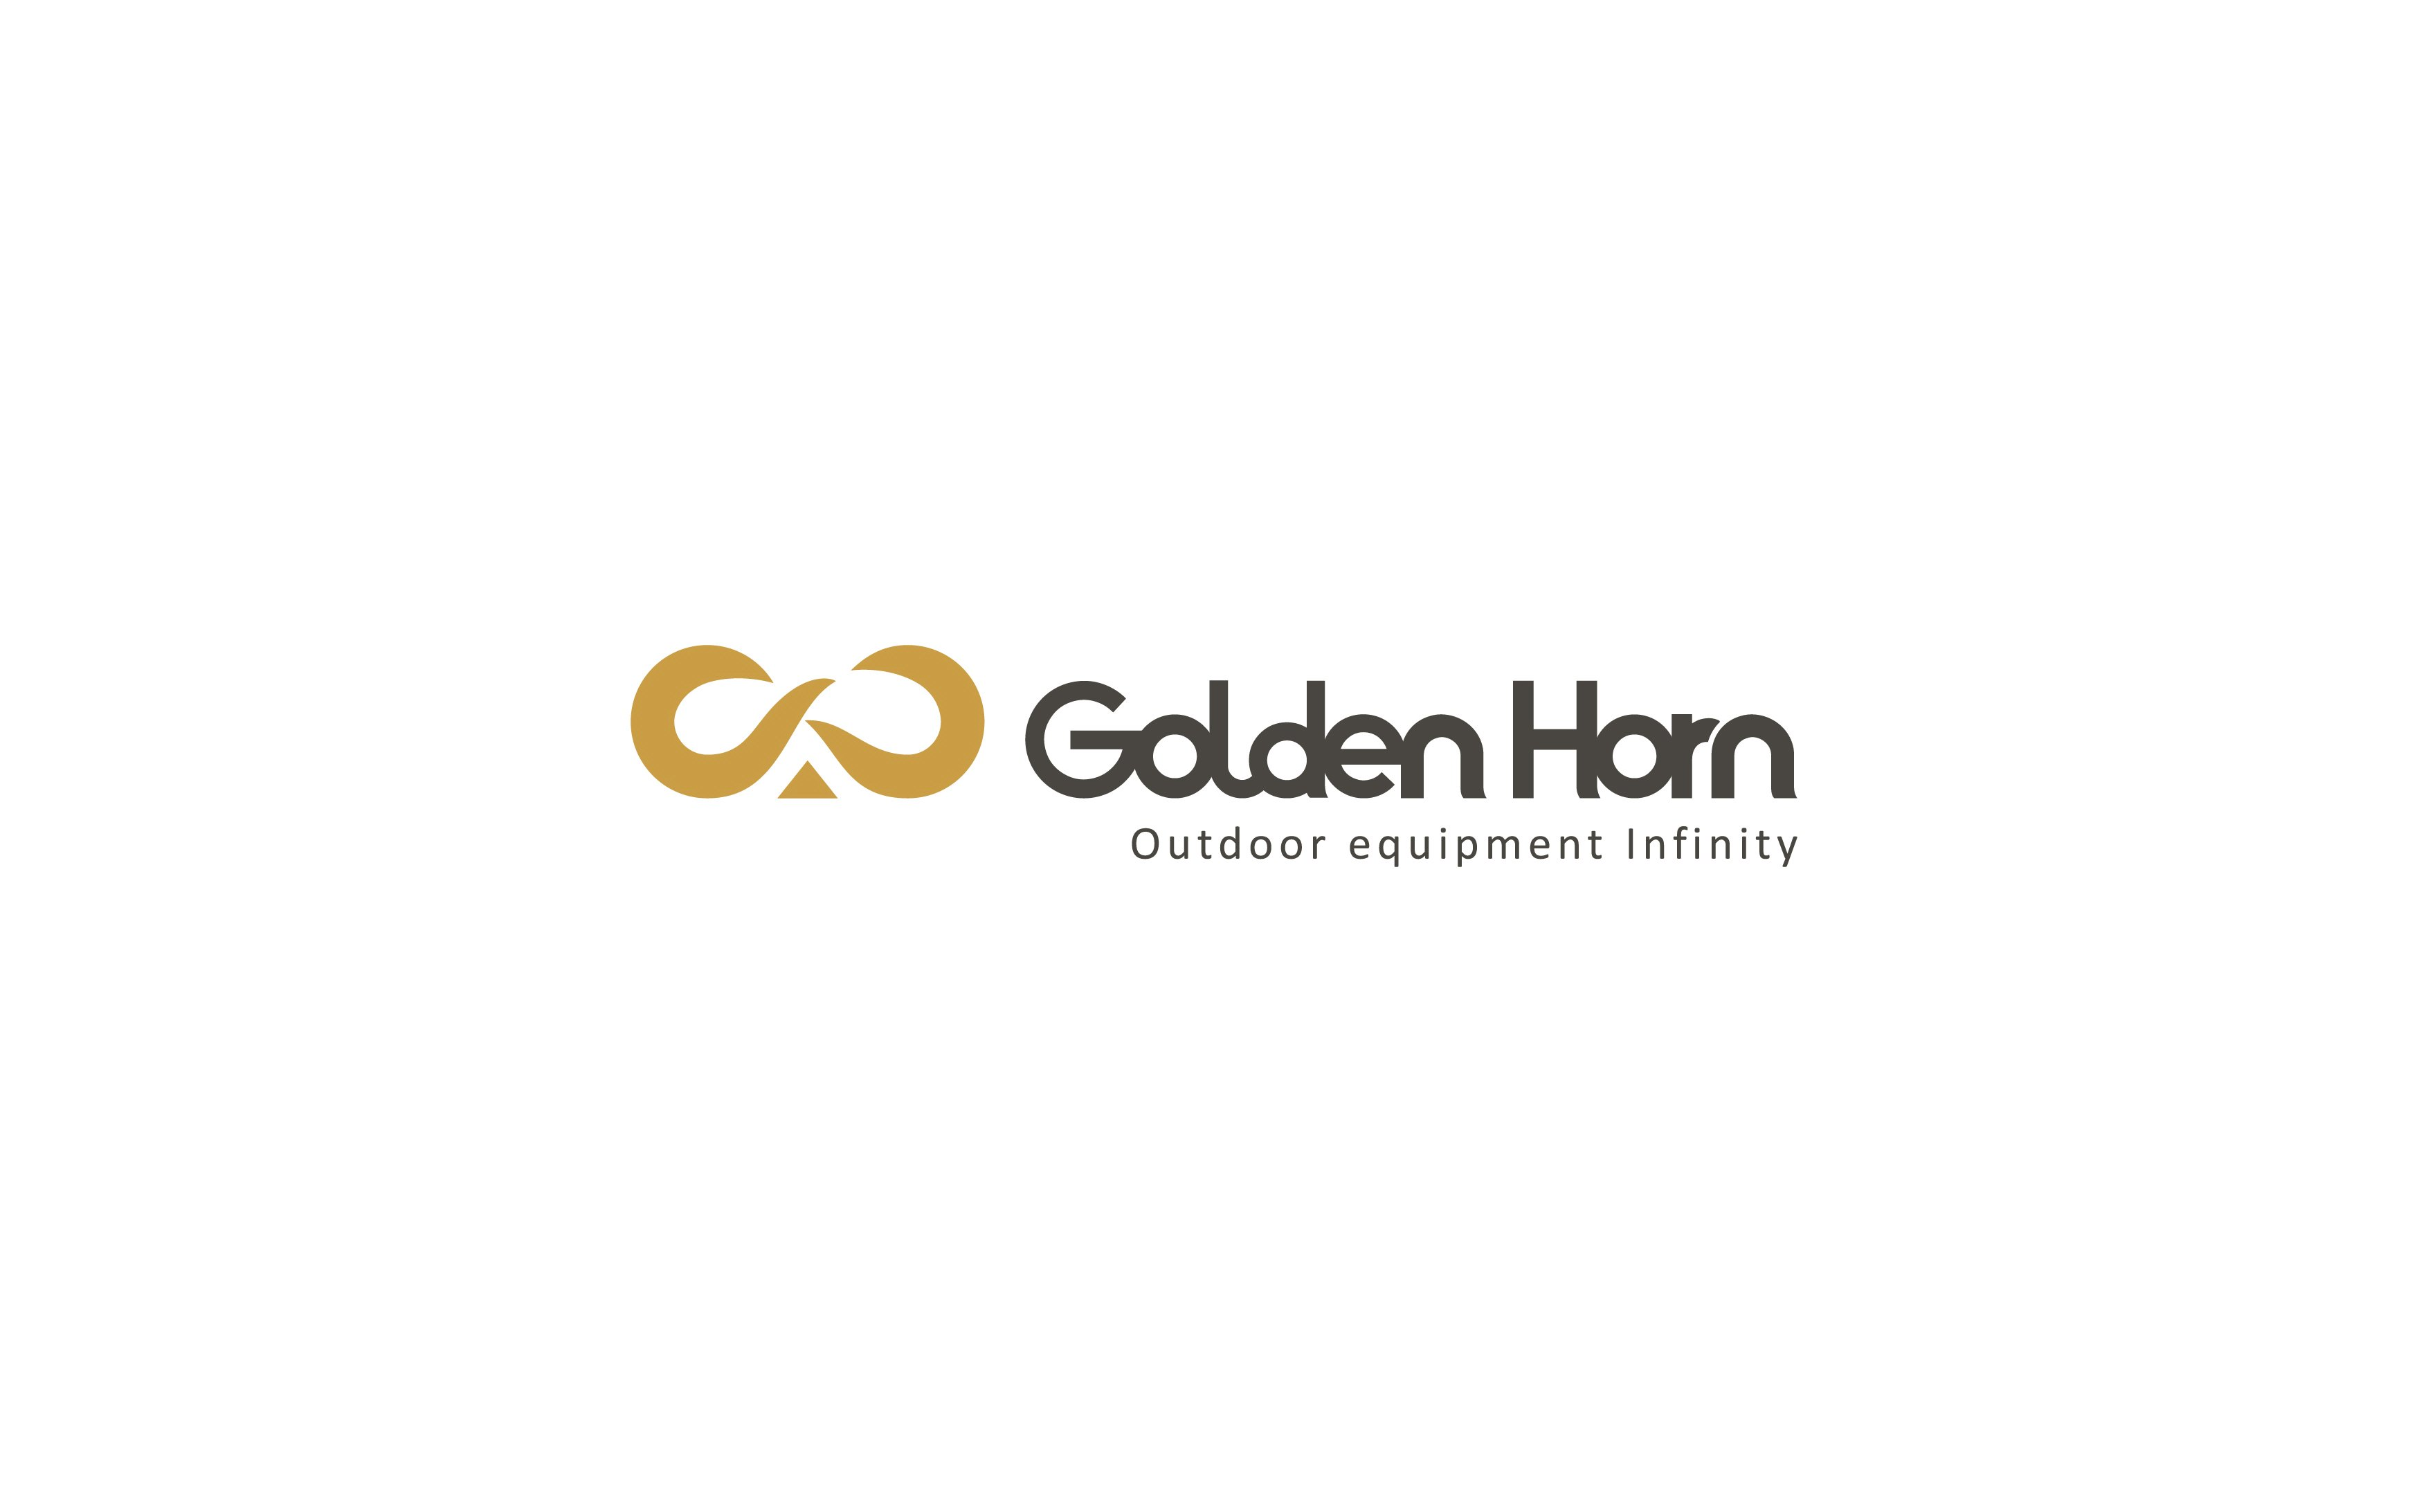  GOLDEN HORN , OUTDOOR EQUIPMENT INFINITY